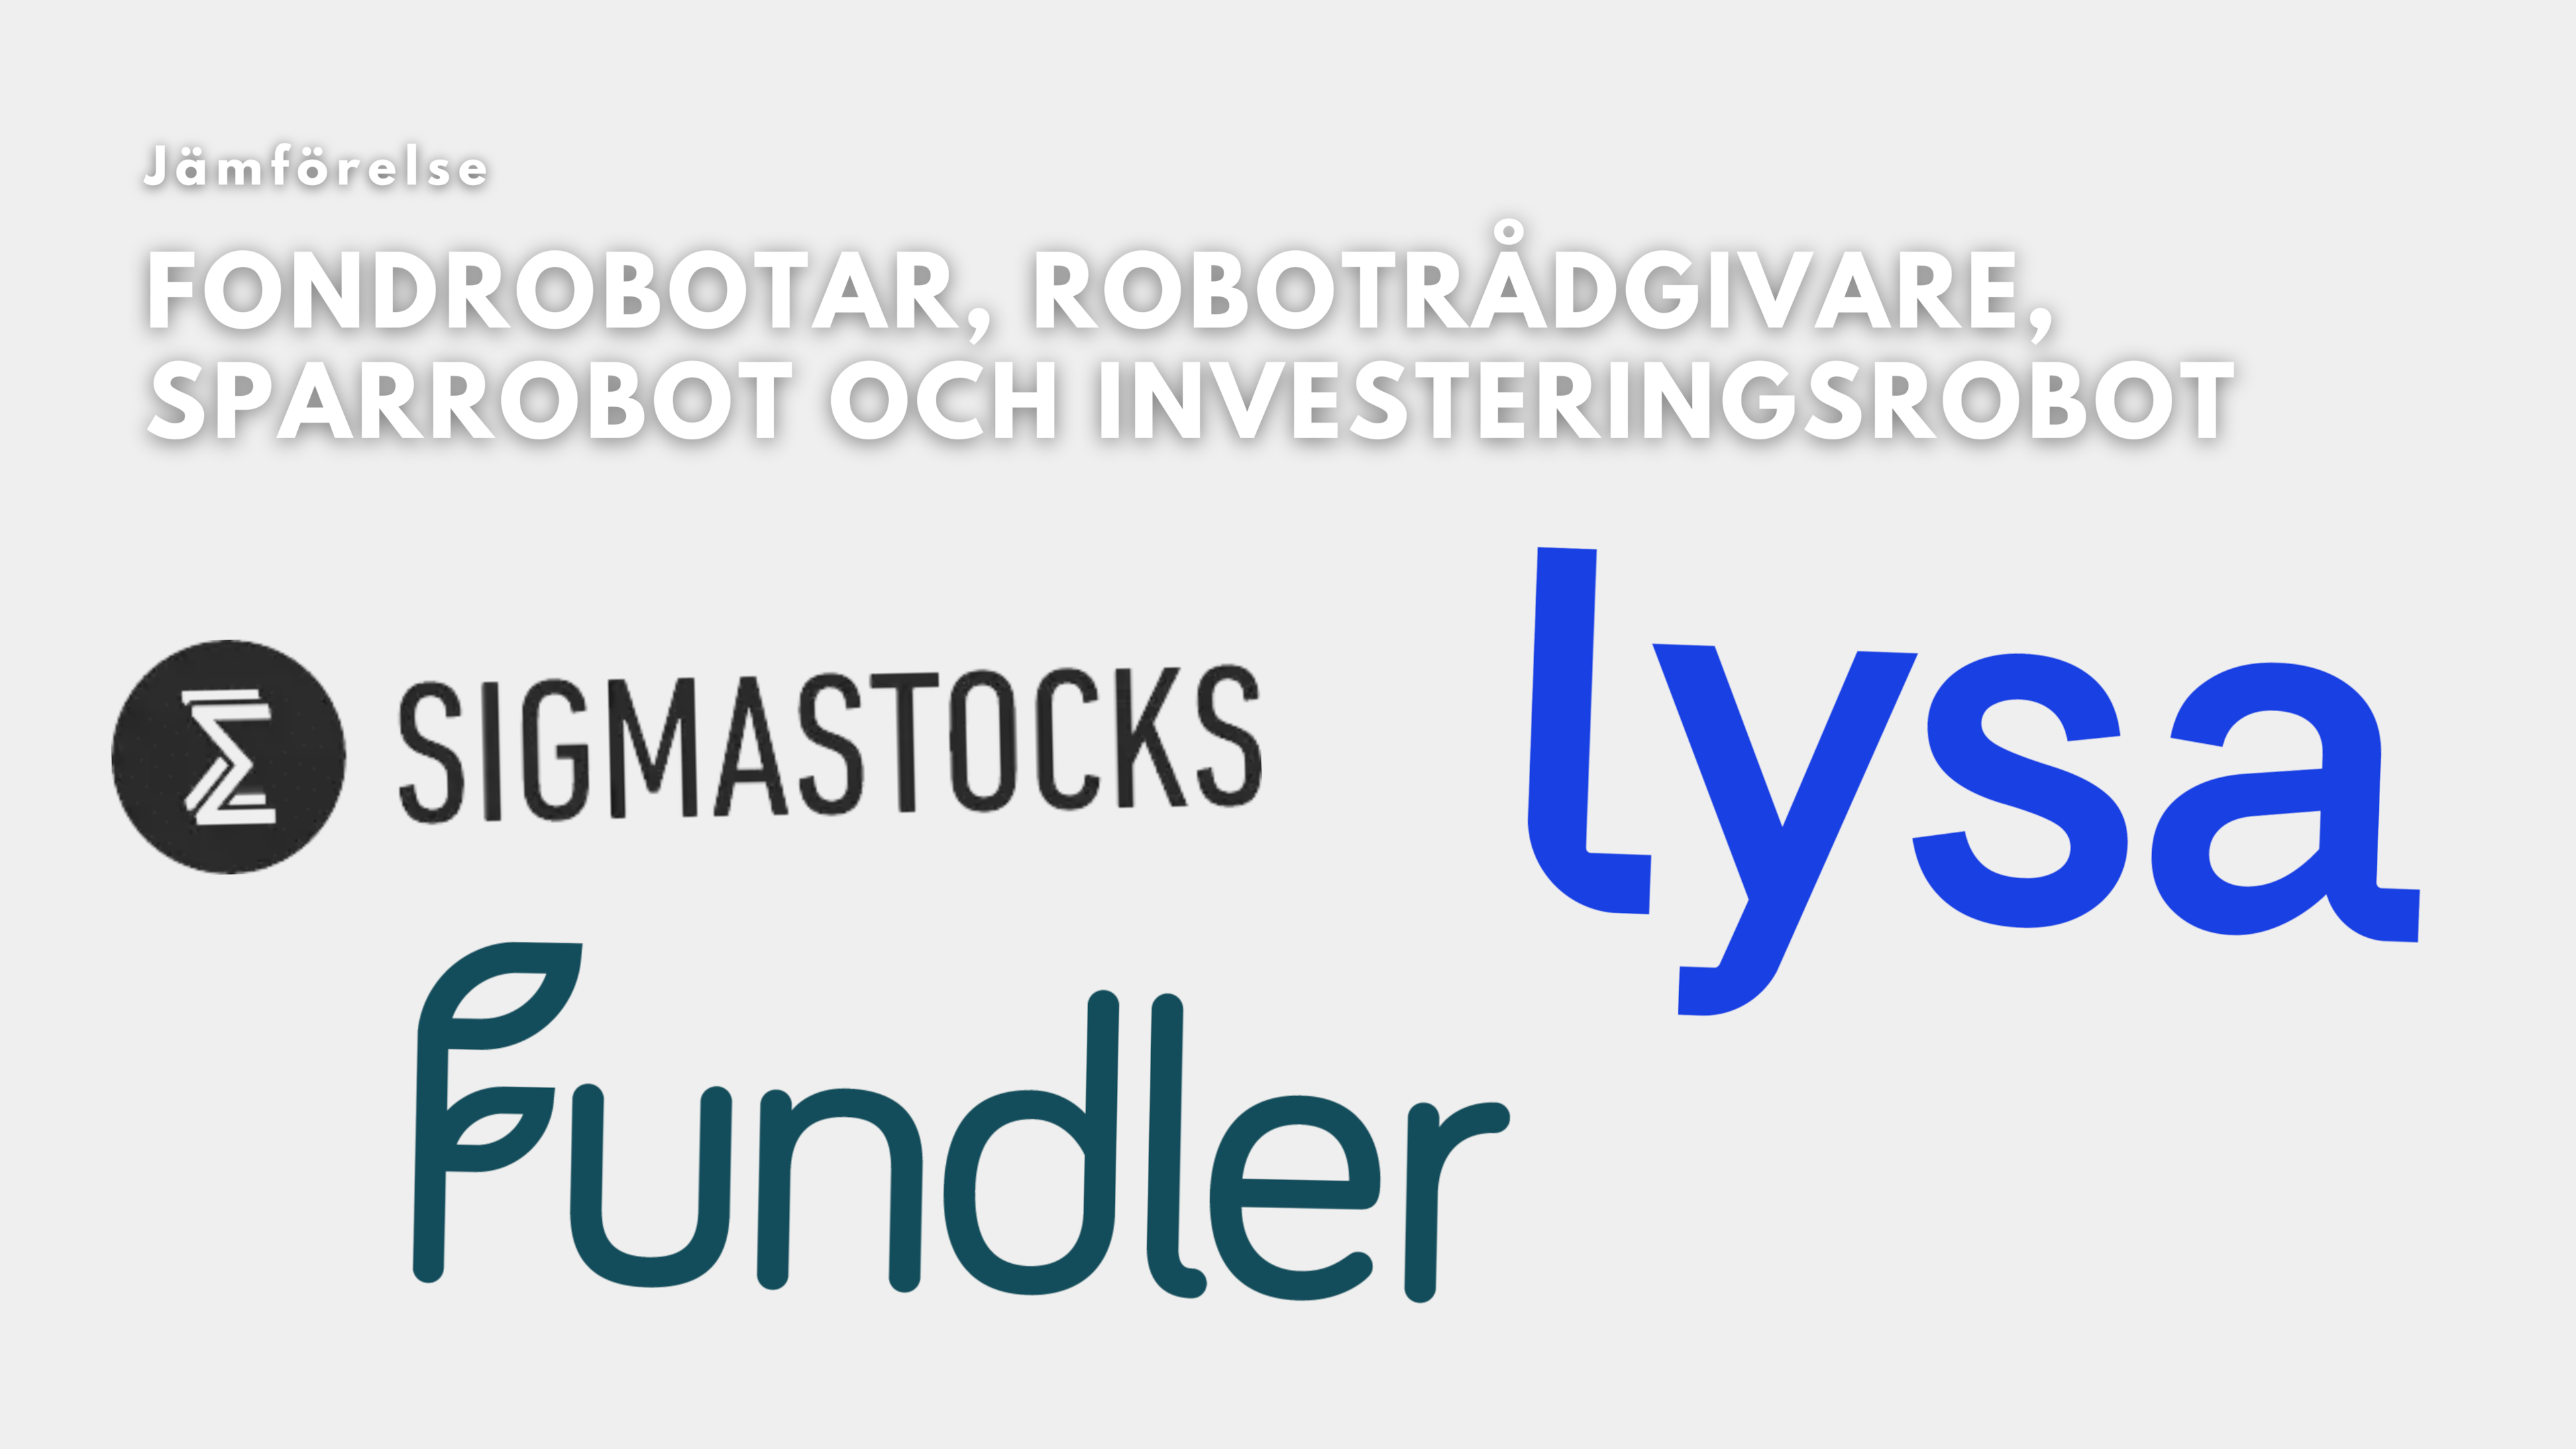 jämförelse av fondrobotar - Lysa, Fundler, Sigma Stocks